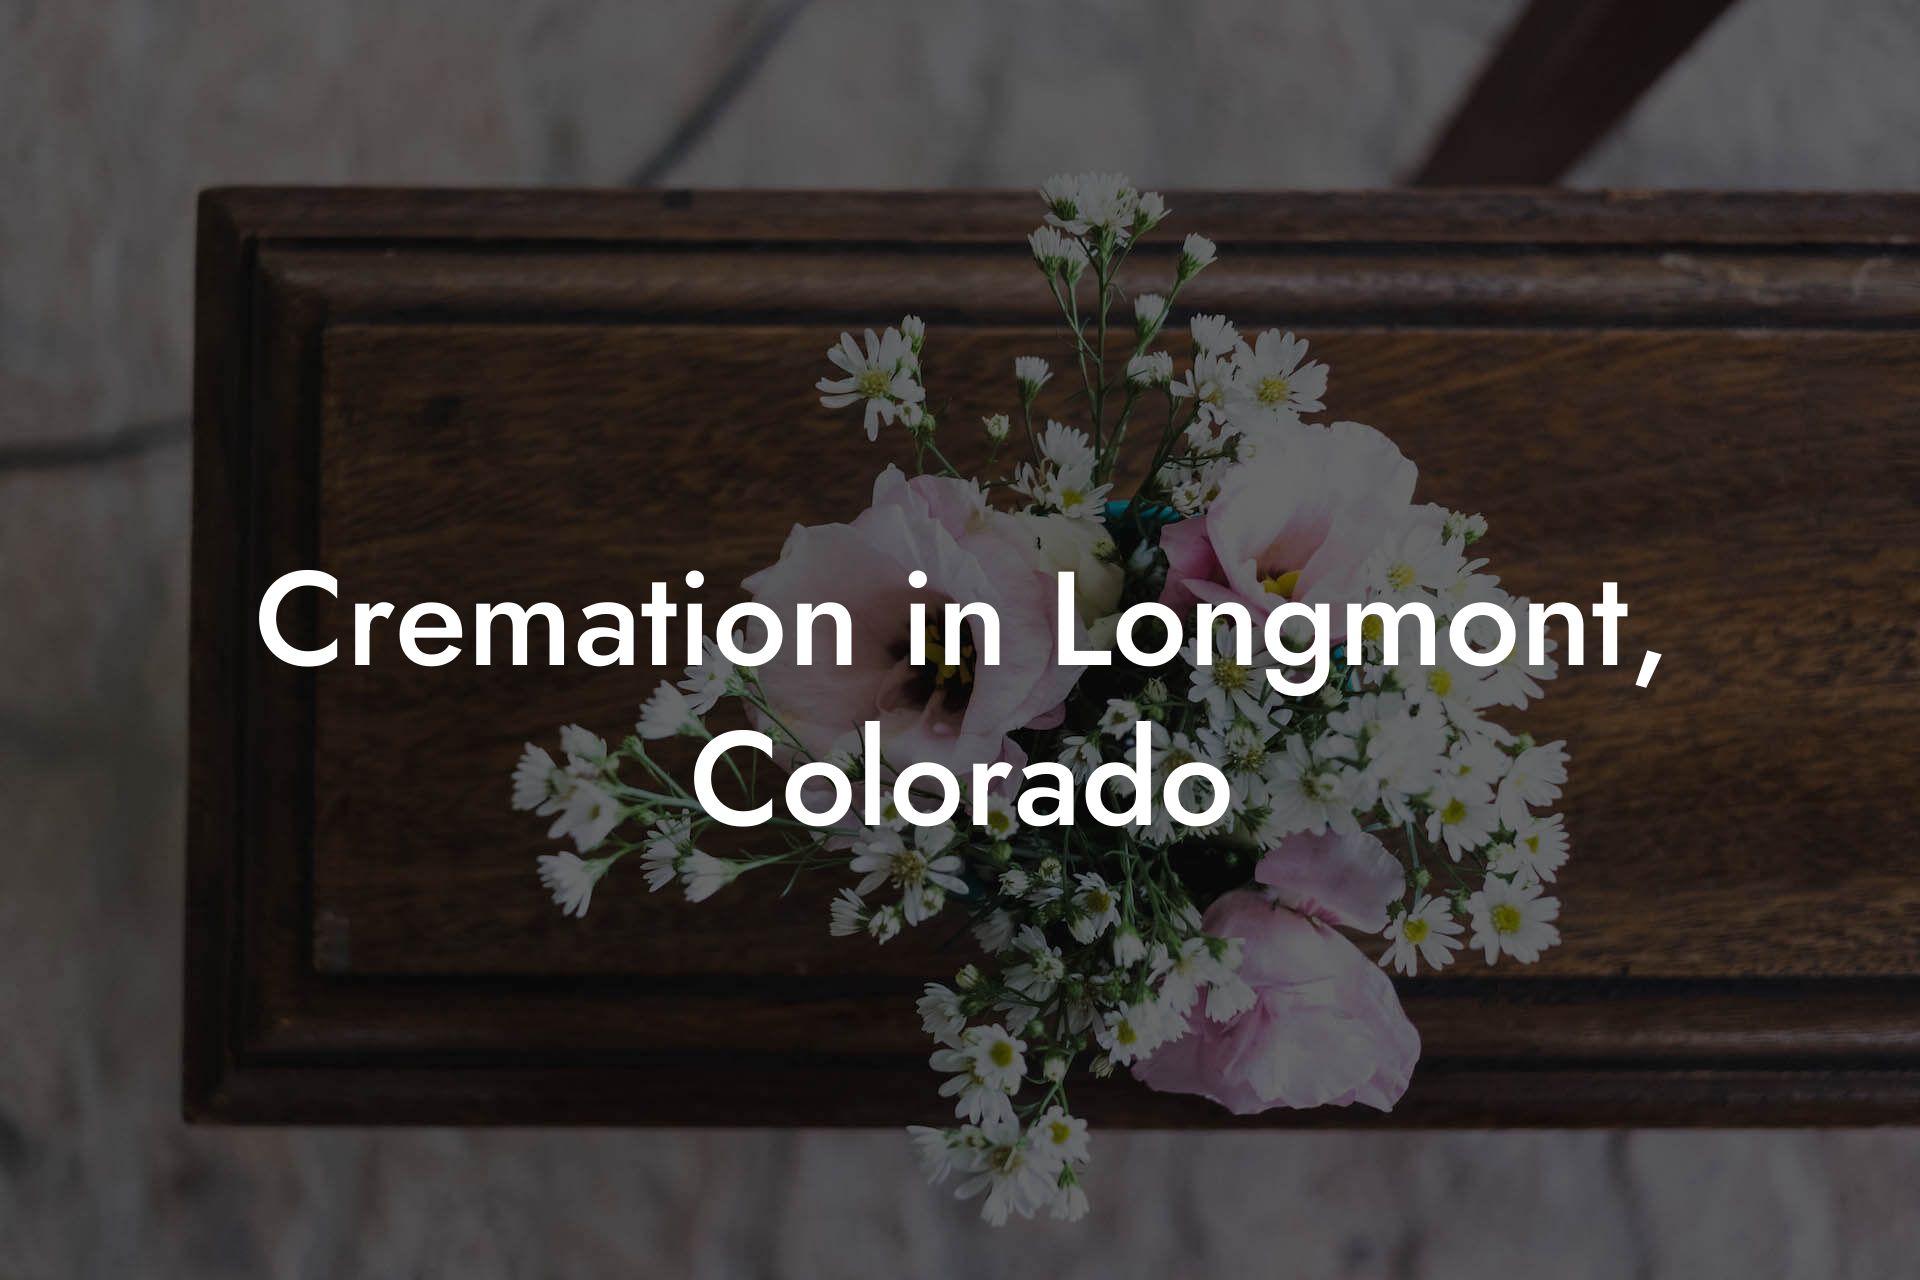 Cremation in Longmont, Colorado